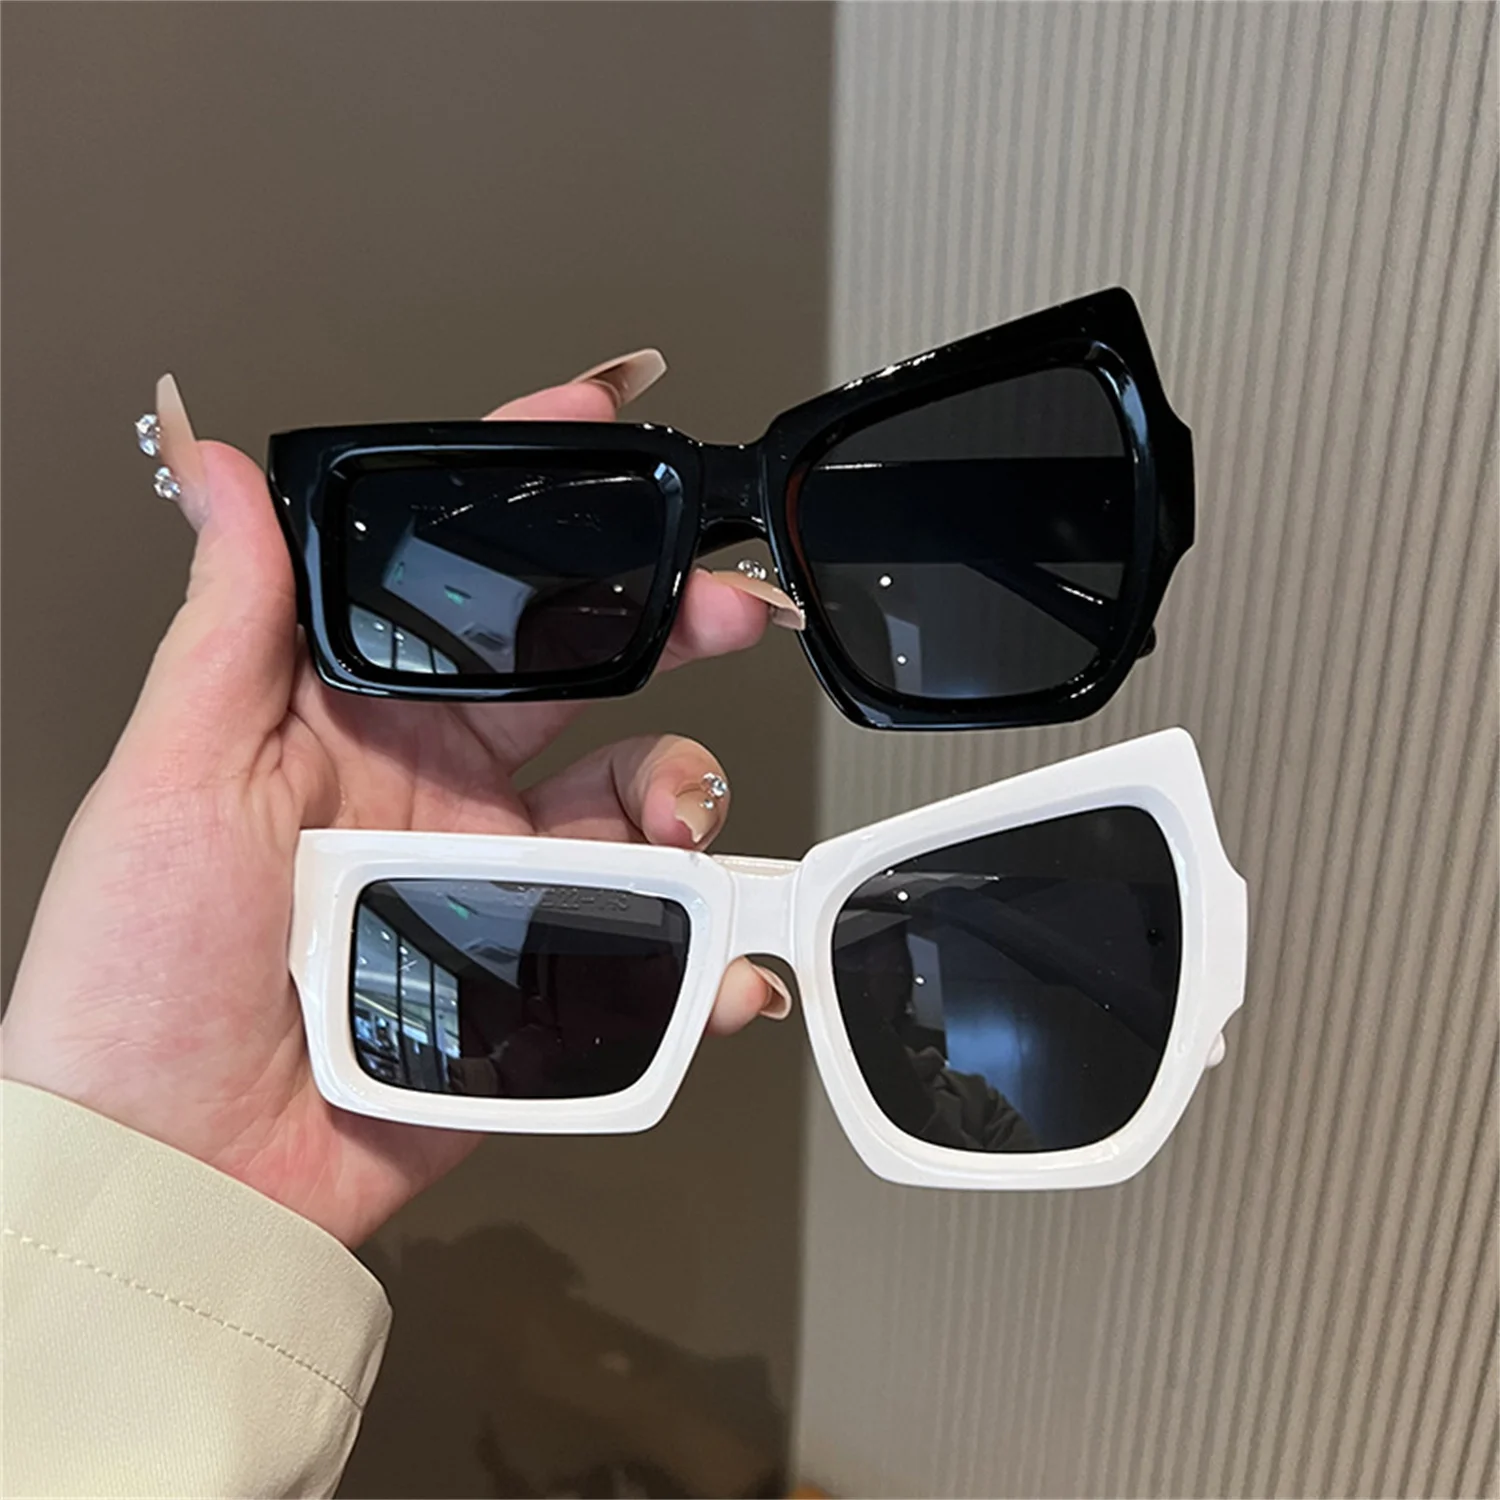 

1 шт. новые асимметричные Квадратные Солнцезащитные очки для поднятия бровей забавные Индивидуальные Модные антибликовые очки в стиле хип-хоп с защитой UV400